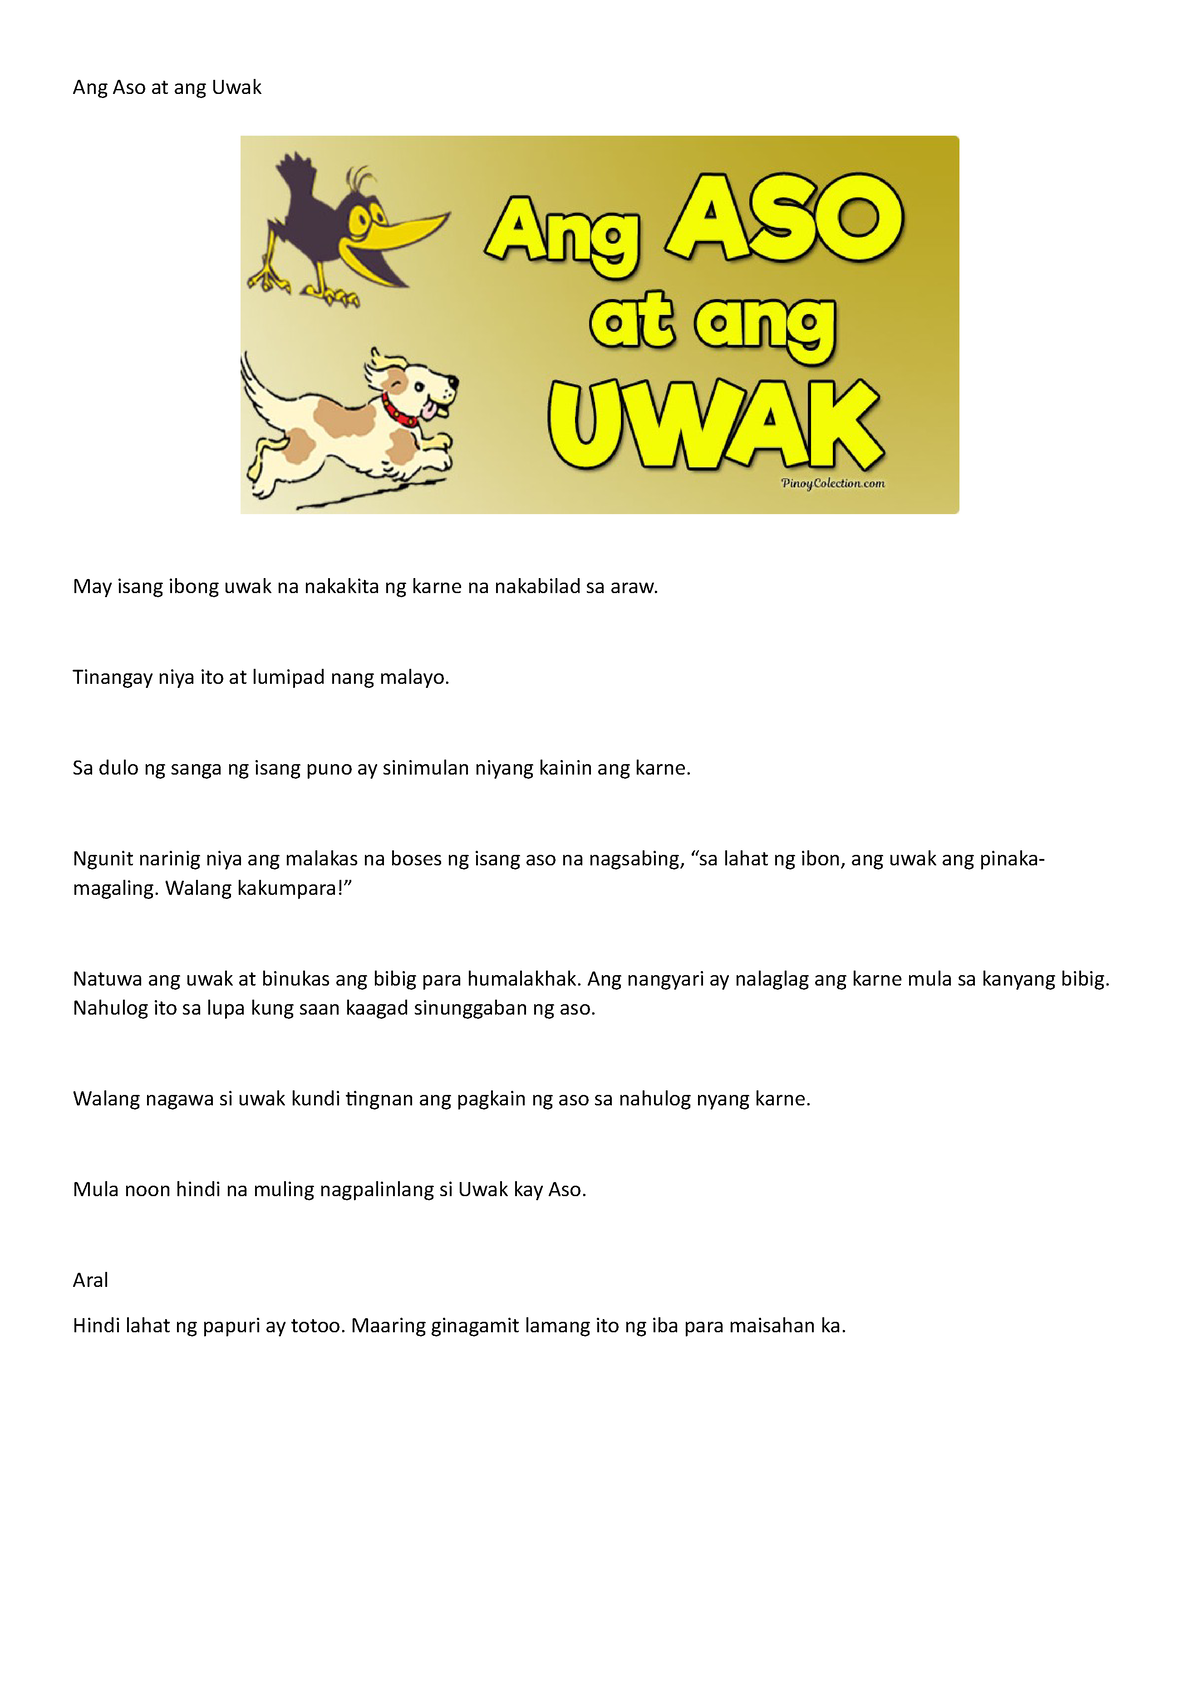 Ang Aso At Ang Uwak Pabula Ang Aso At Ang Uwak May Isang Ibong Uwak 2416